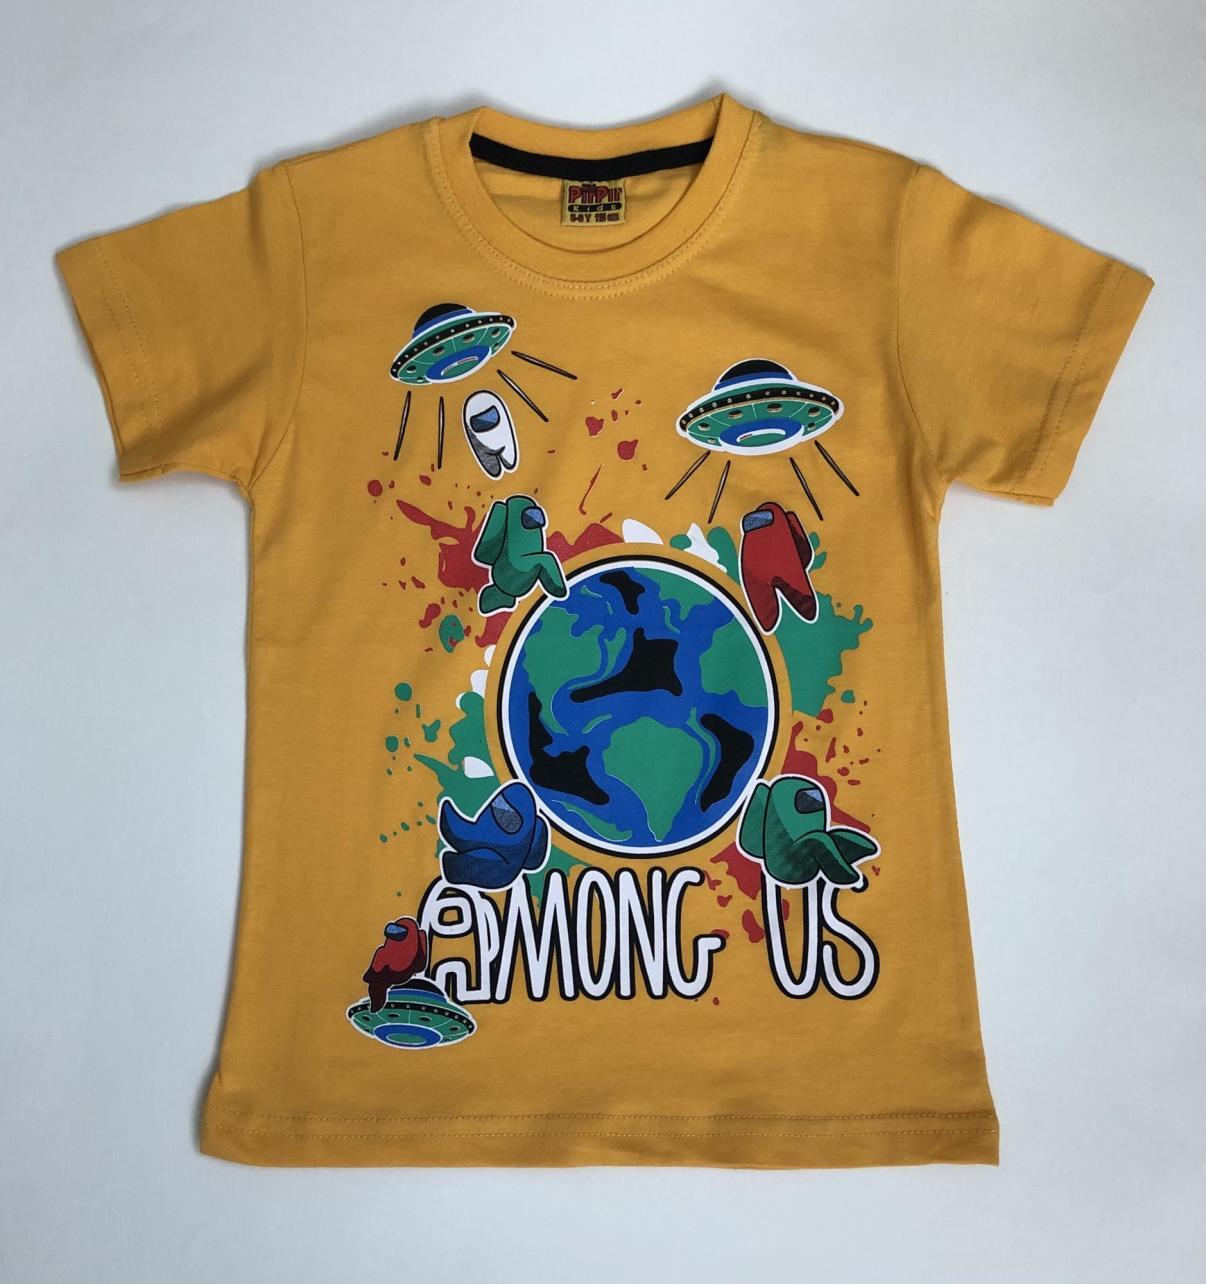 Футболка Озон. Самые дешевые товары на Озоне футболки. Футболки в Озоне по 99 руб. Цветные футболки на Озоне.